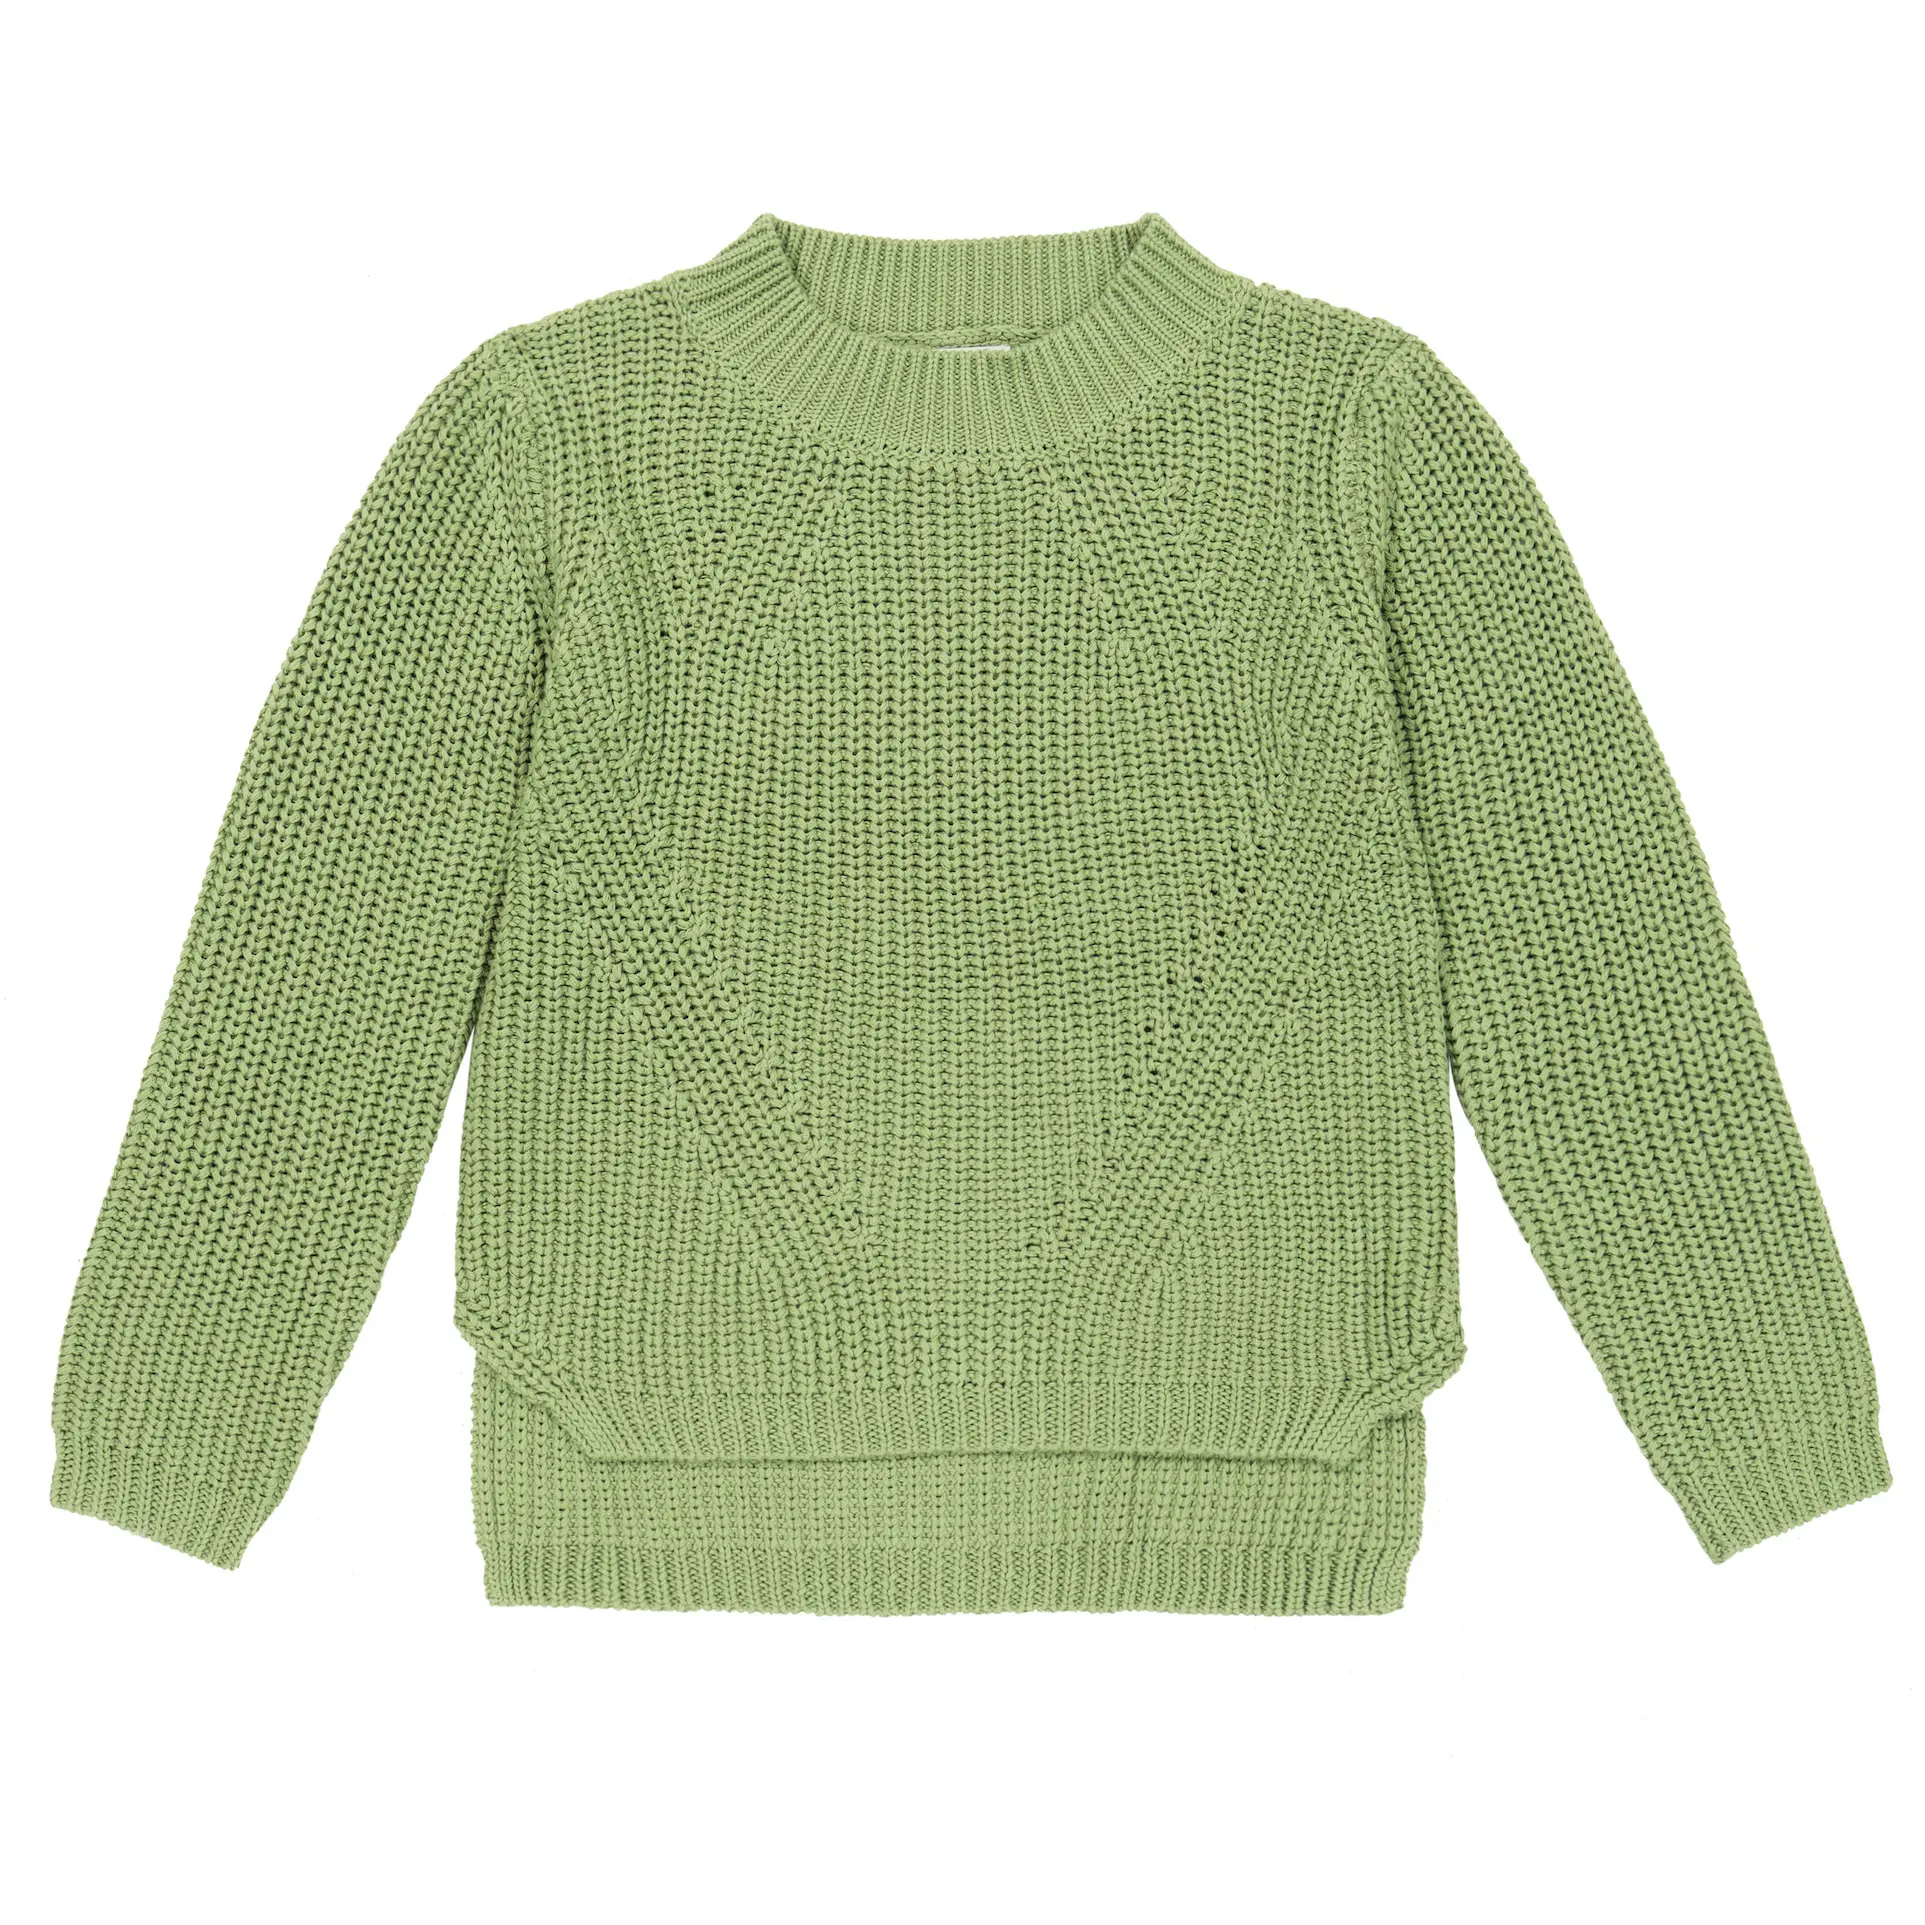 Personalizzato 100% cotone ragazzo ragazze bambini bambino maglione stampato lavorato a maglia bambini che lavorano a maglia maglieria semplice